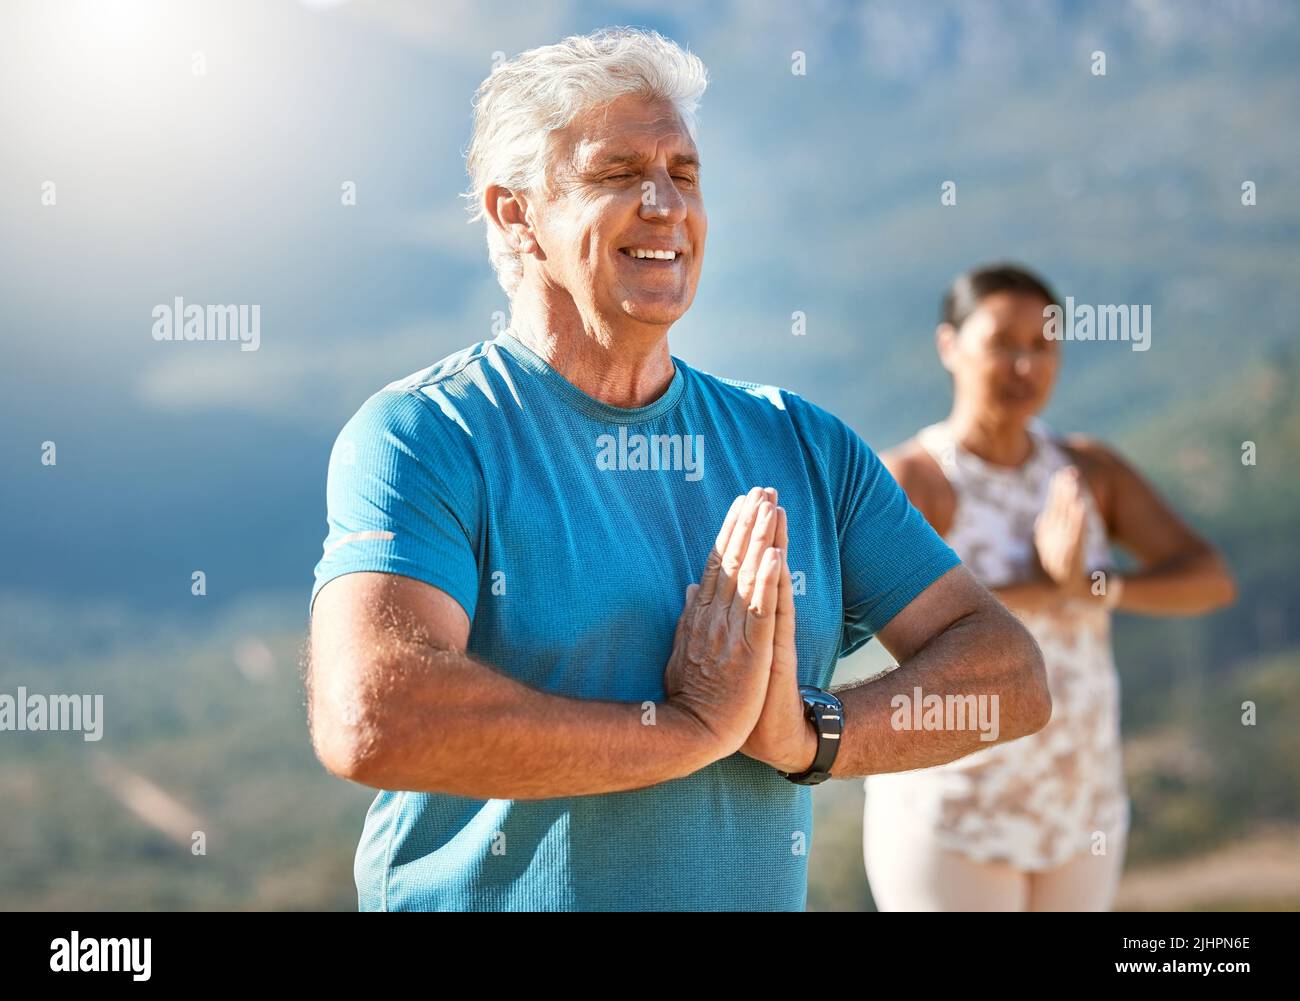 Älterer Mann meditiert mit verbundenen Händen und geschlossenen Augen und atmet tief. Reife Menschen, die Yoga in der Natur machen und einen gesunden aktiven Lebensstil leben Stockfoto